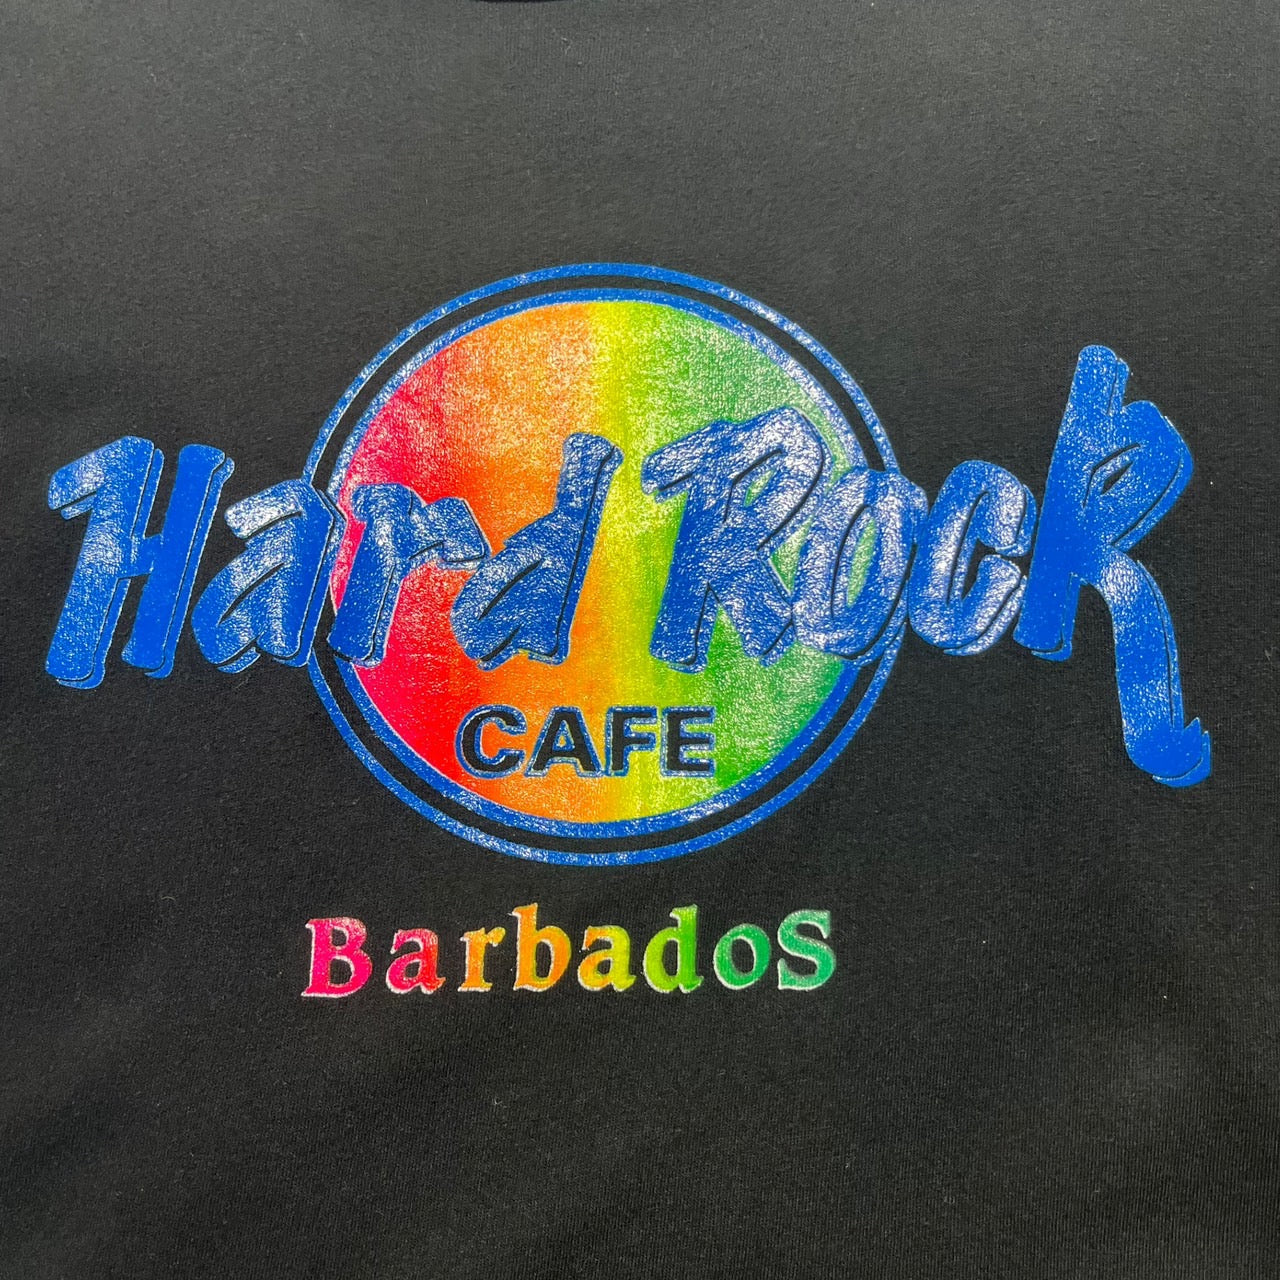 Hard Rock Cafe(ハードロックカフェ) 90'sオーバーサイズTシャツ サイズ消え(XLサイズ程度) ブラック